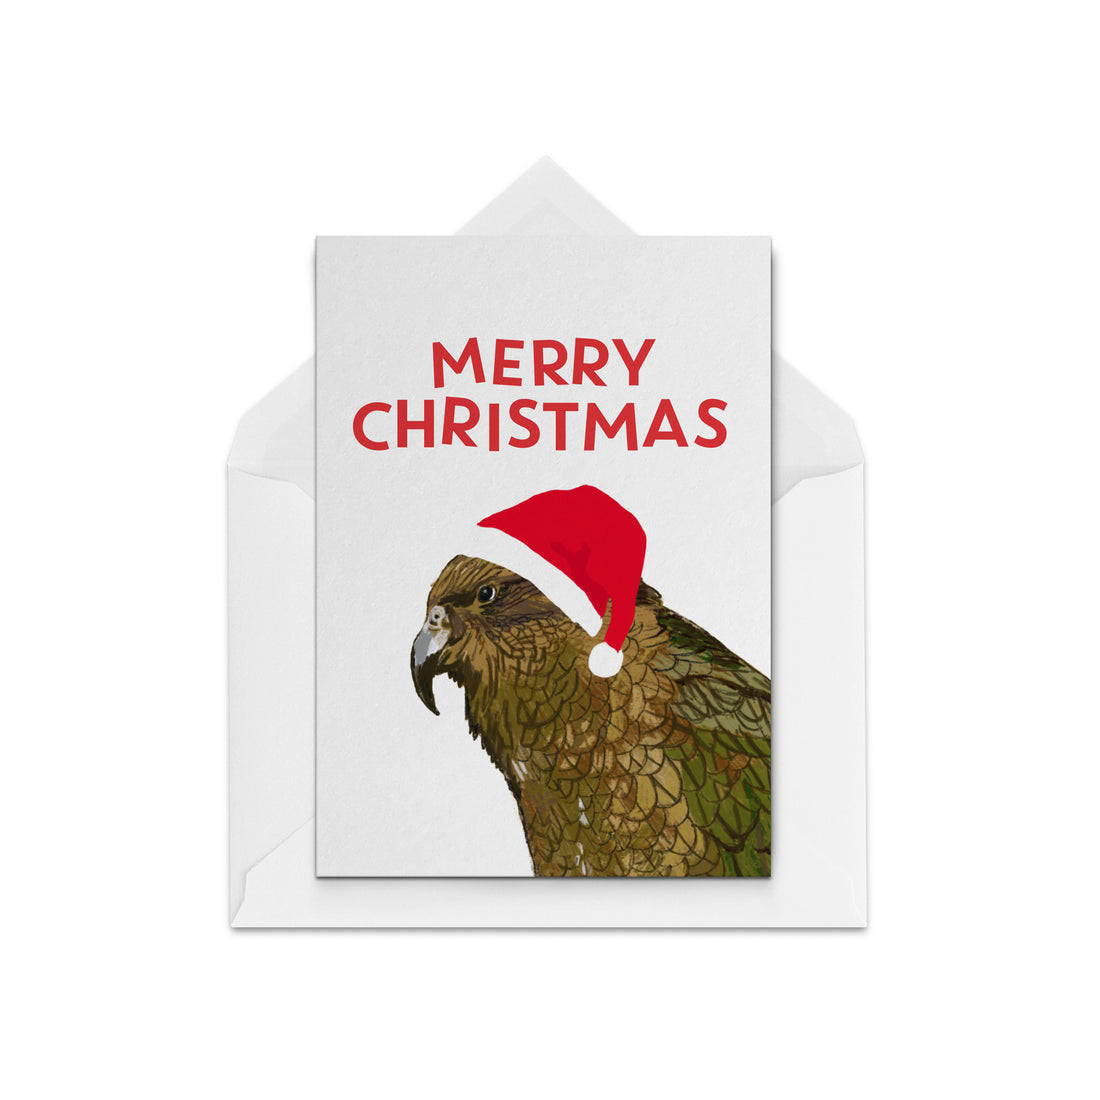 New Zealand Kea on a Christmas Card